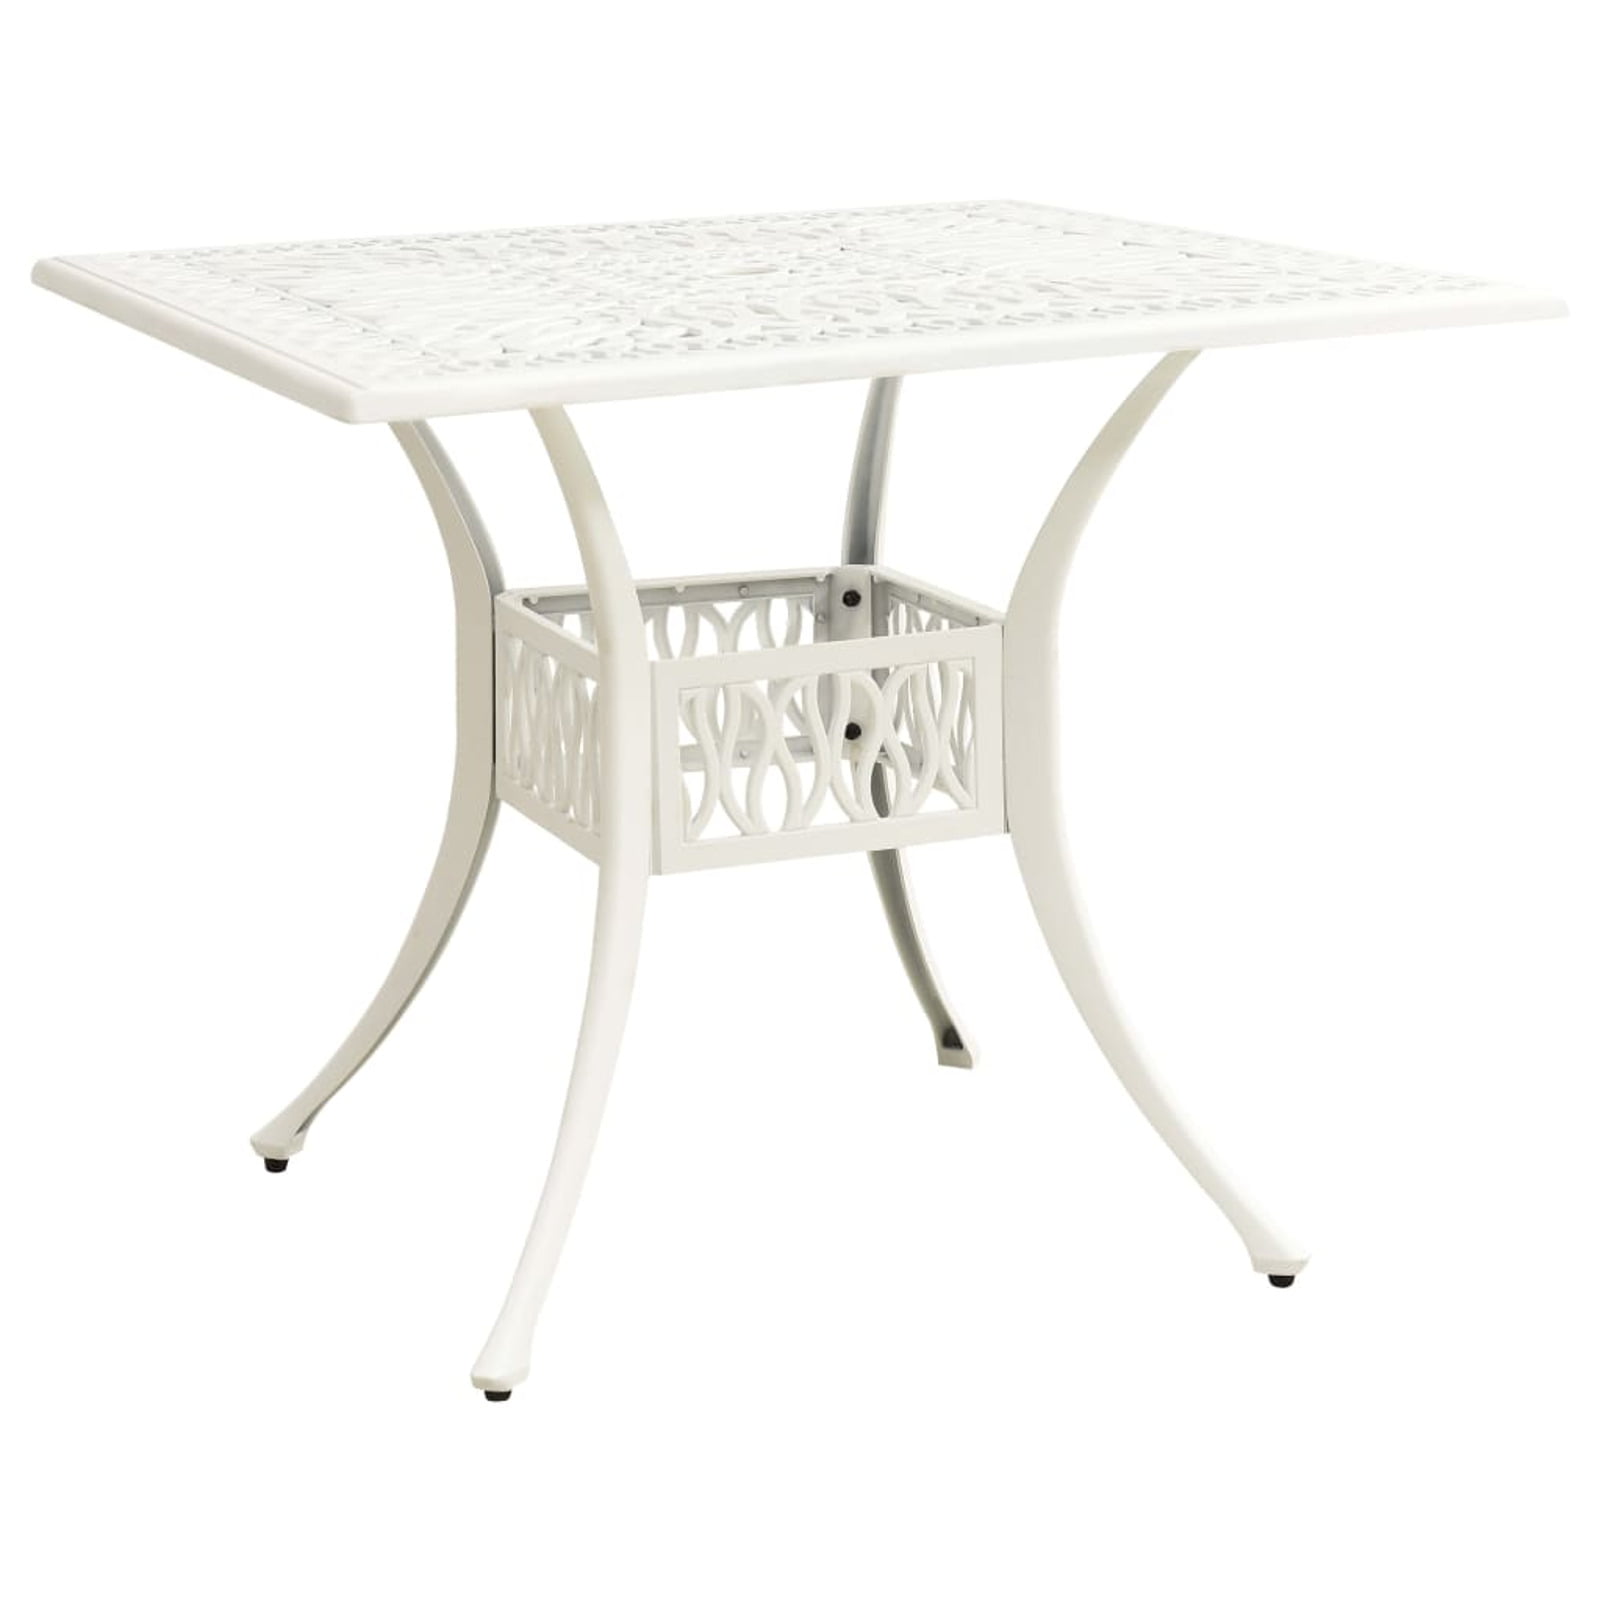 Cafe Table Cheap Aluminium Tables YB-504 Aluminium Garden Table Bistro Table